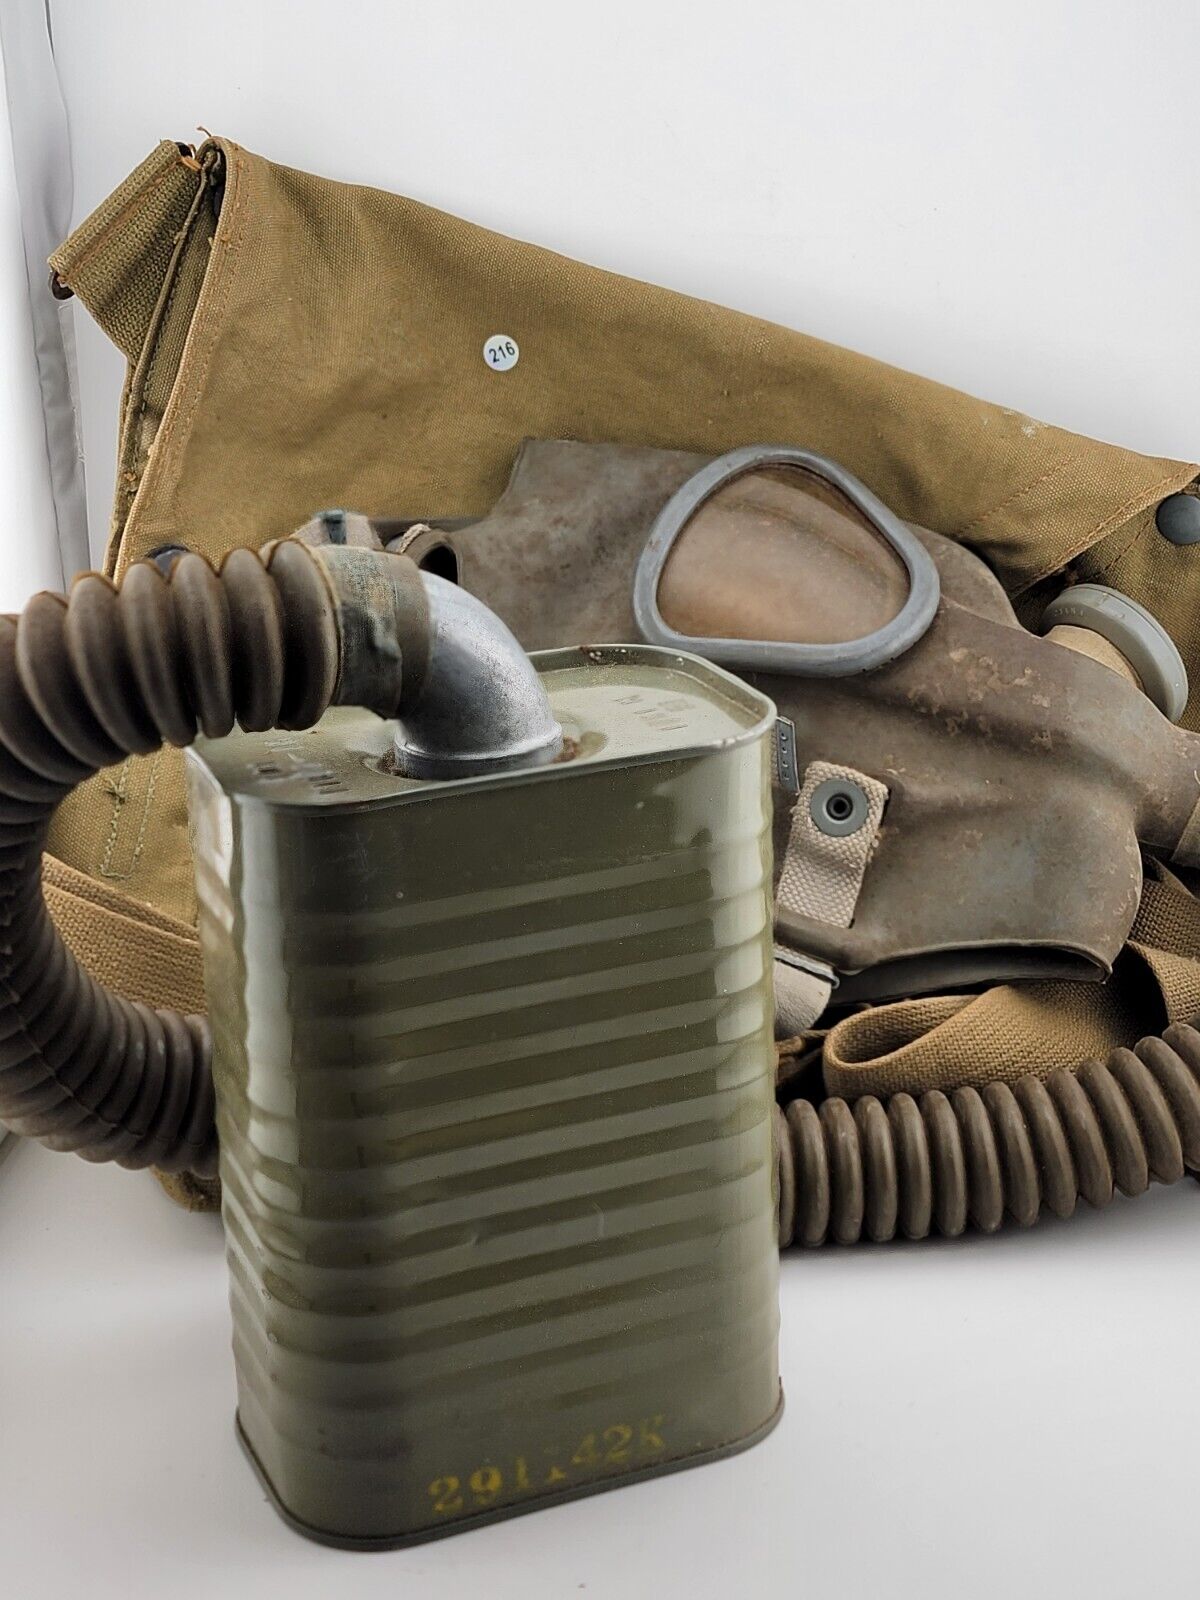 Original 1942 WW2 US Army M1A2 Diaphragm Gas Mask in Kidney Bag, Flexible